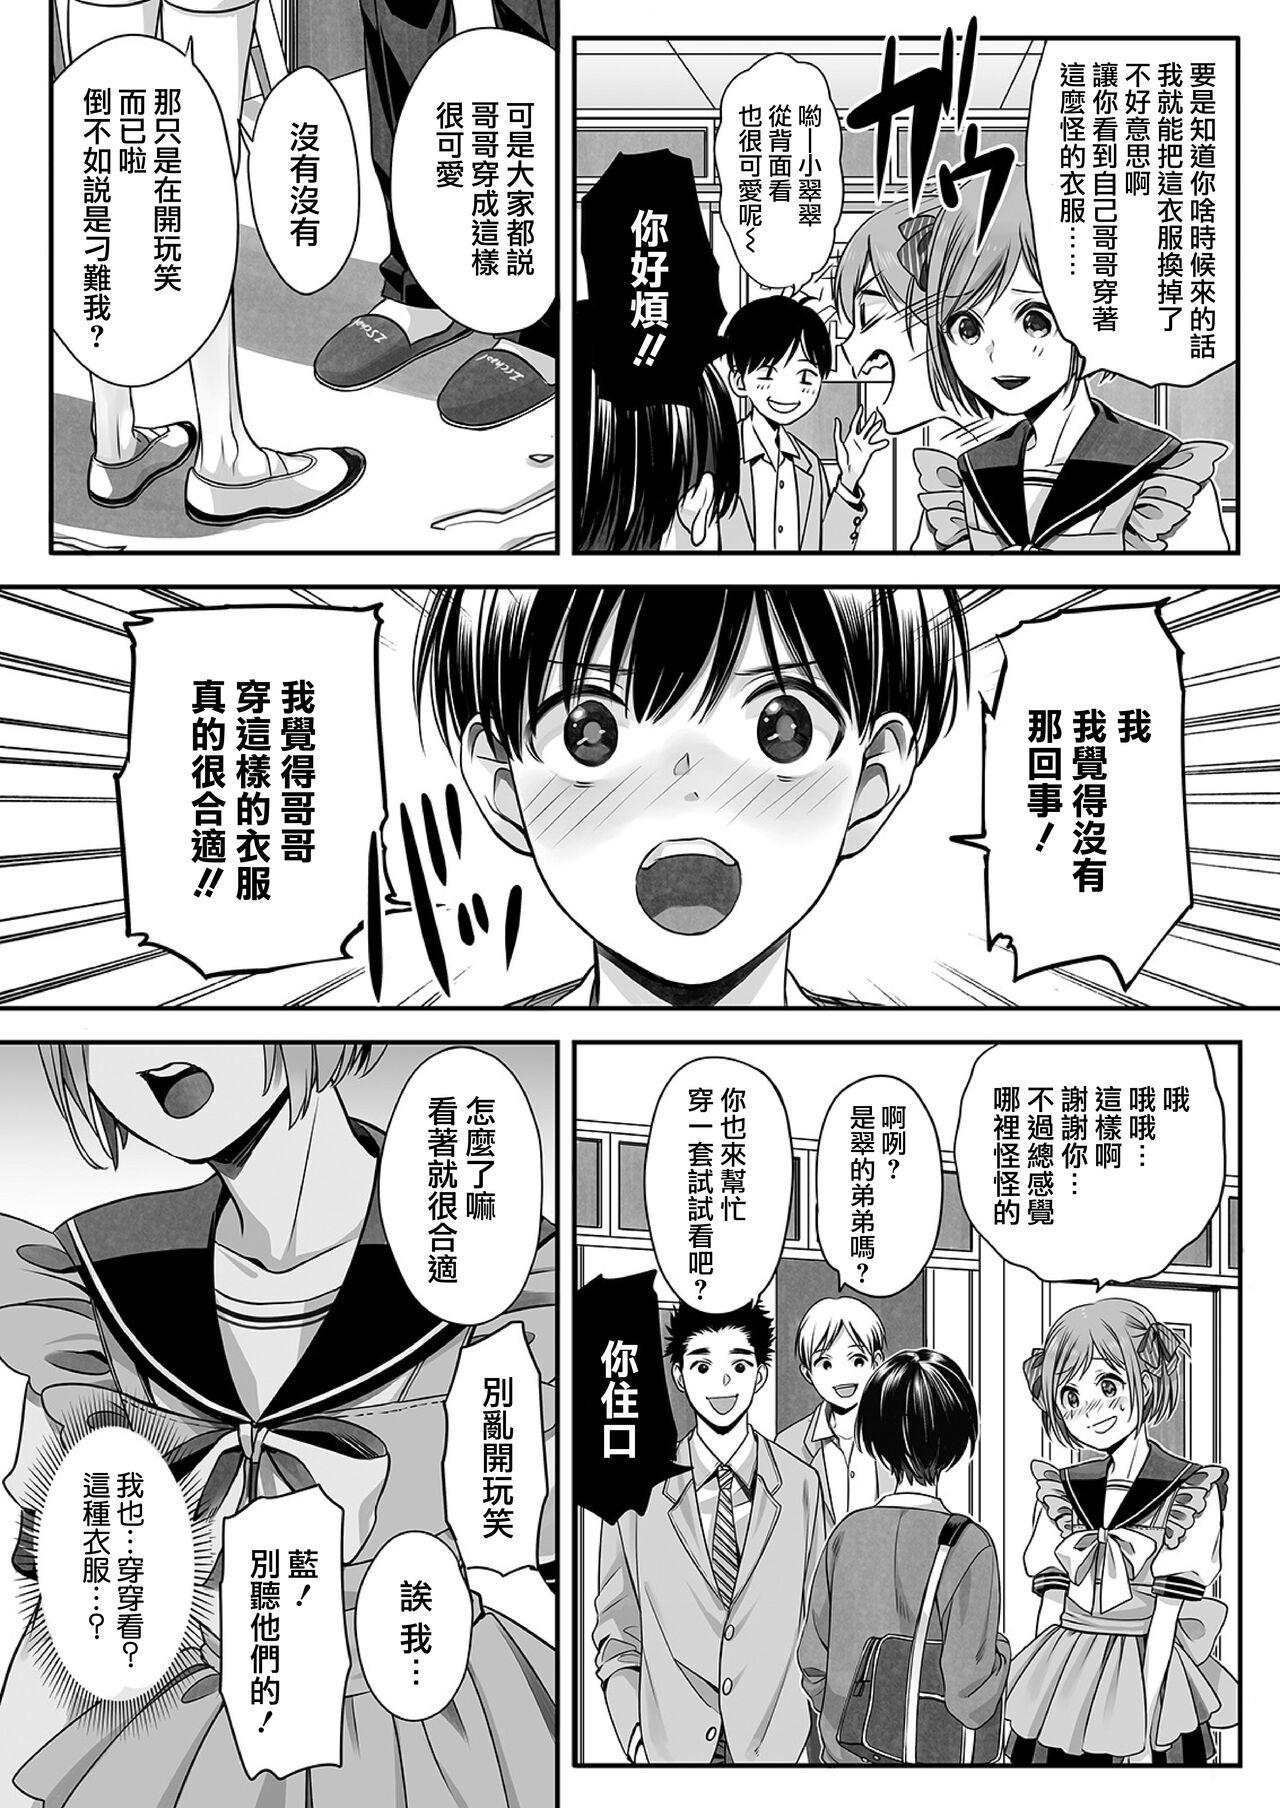 Strap On Ai-kun no Mezame Her - Page 3